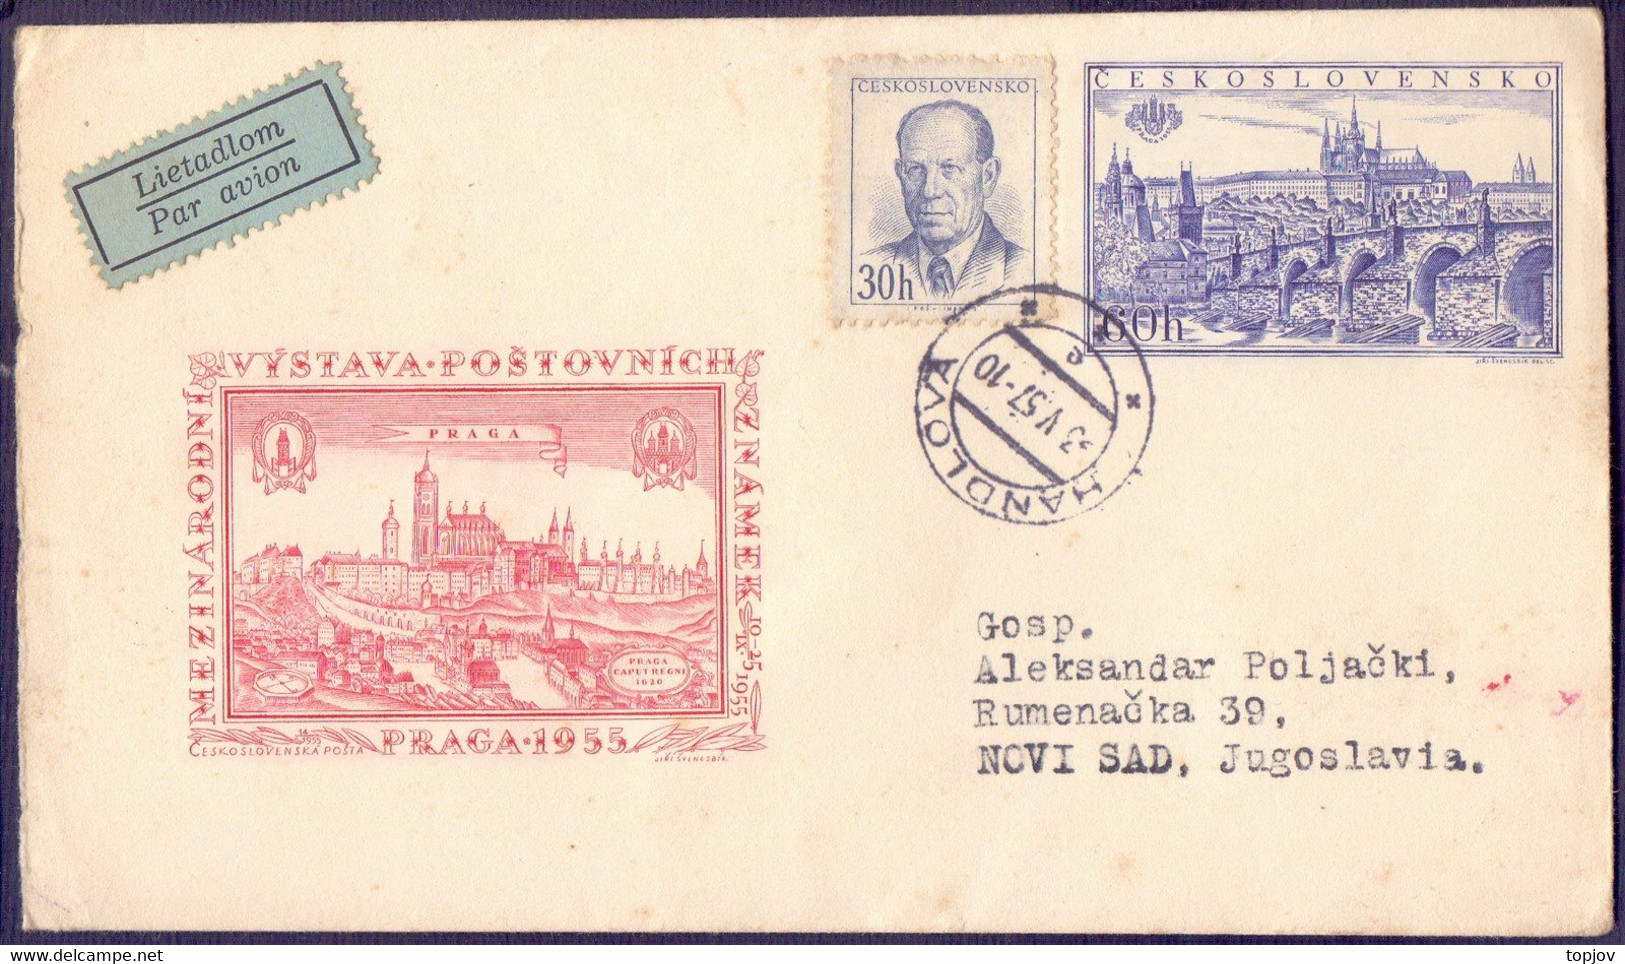 CZECHOSLOVAKIA - PRAGA - BRIDGE - 1957 - Omslagen